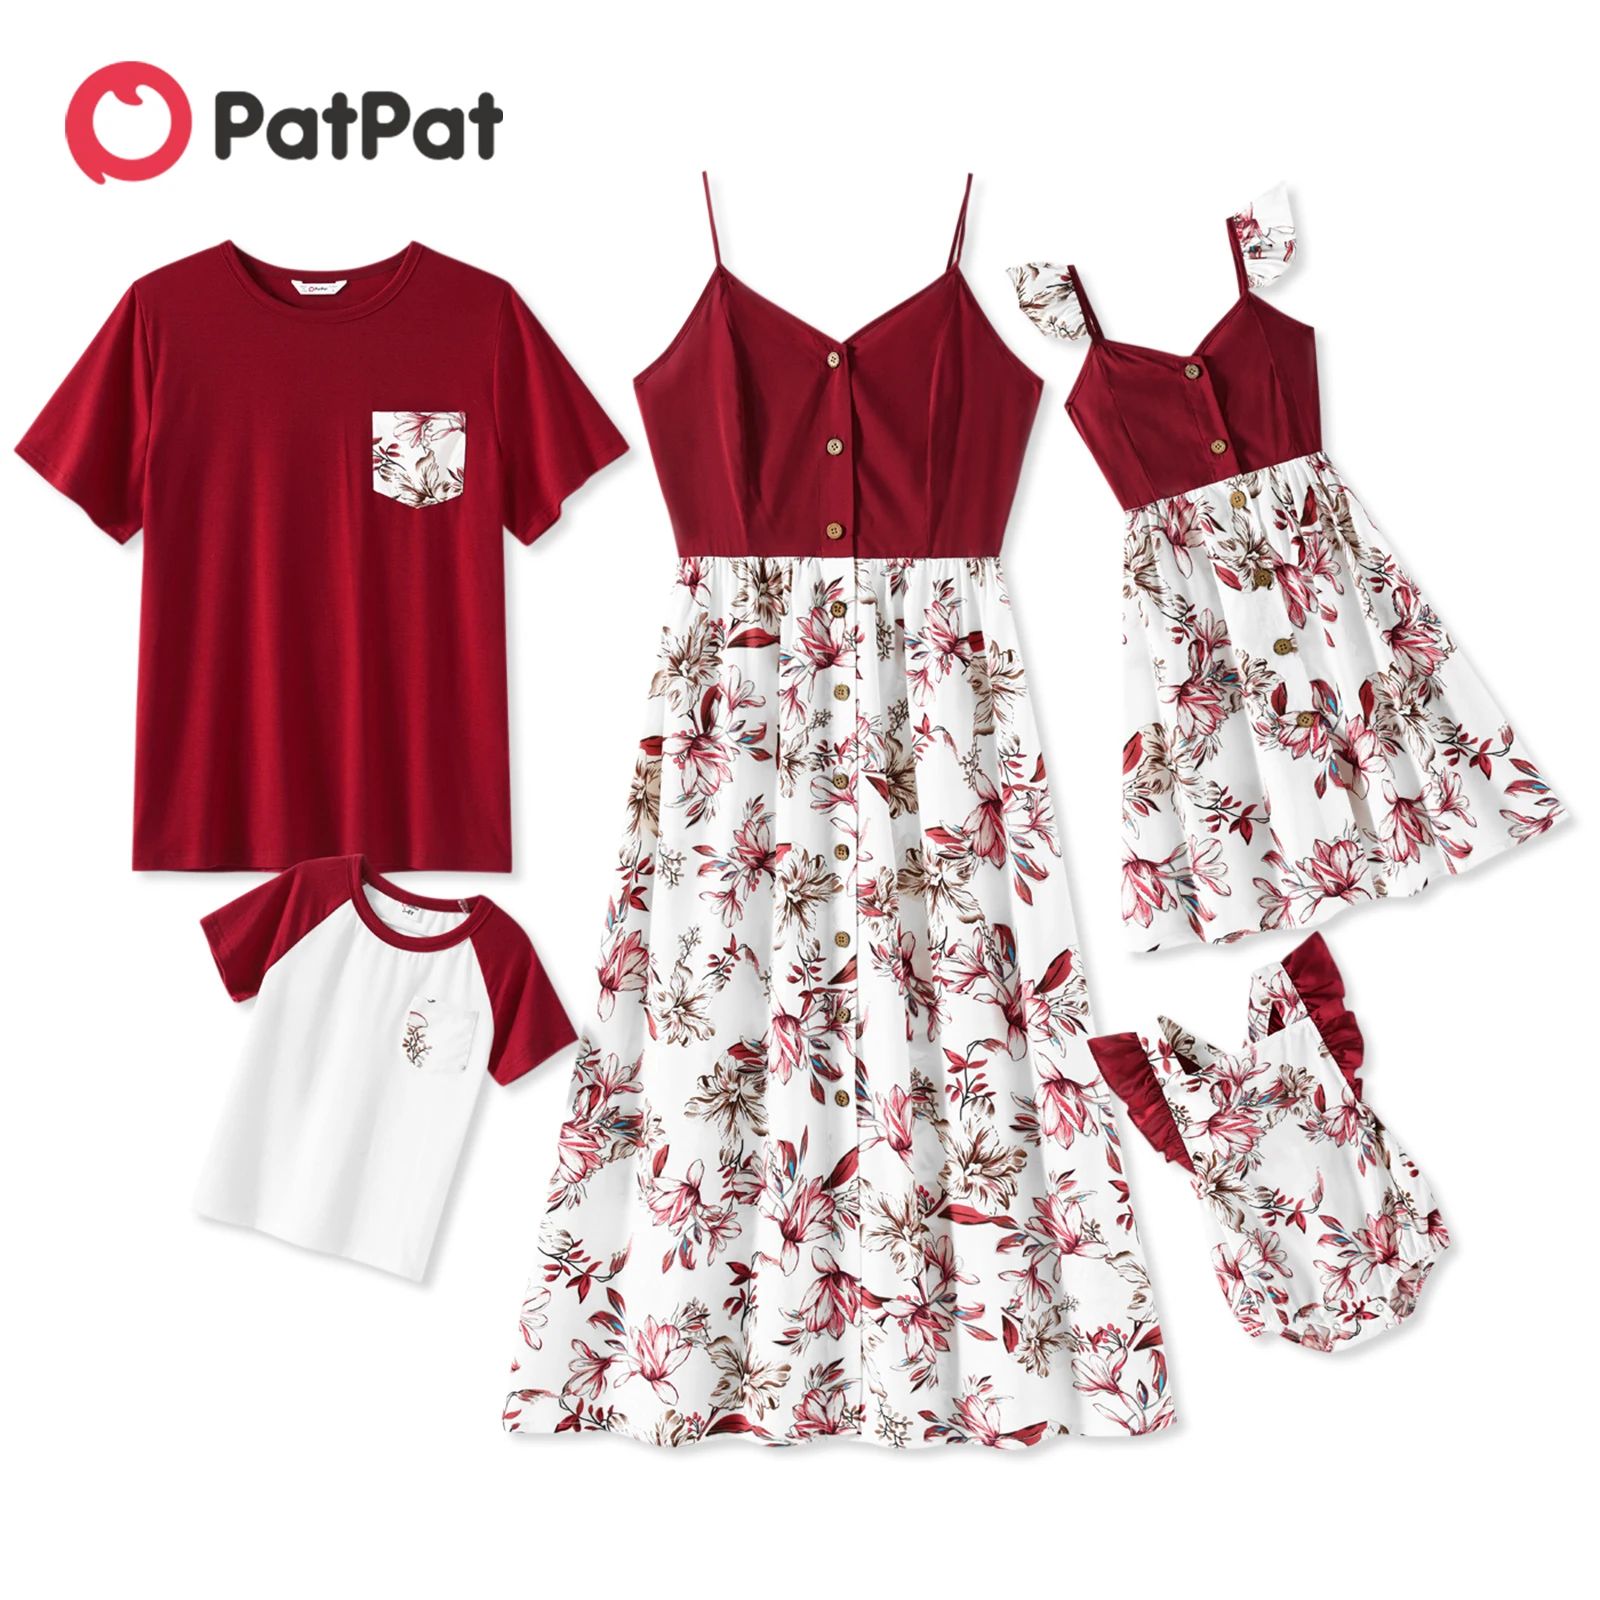 PatPat/ Одинаковые платья для семьи 